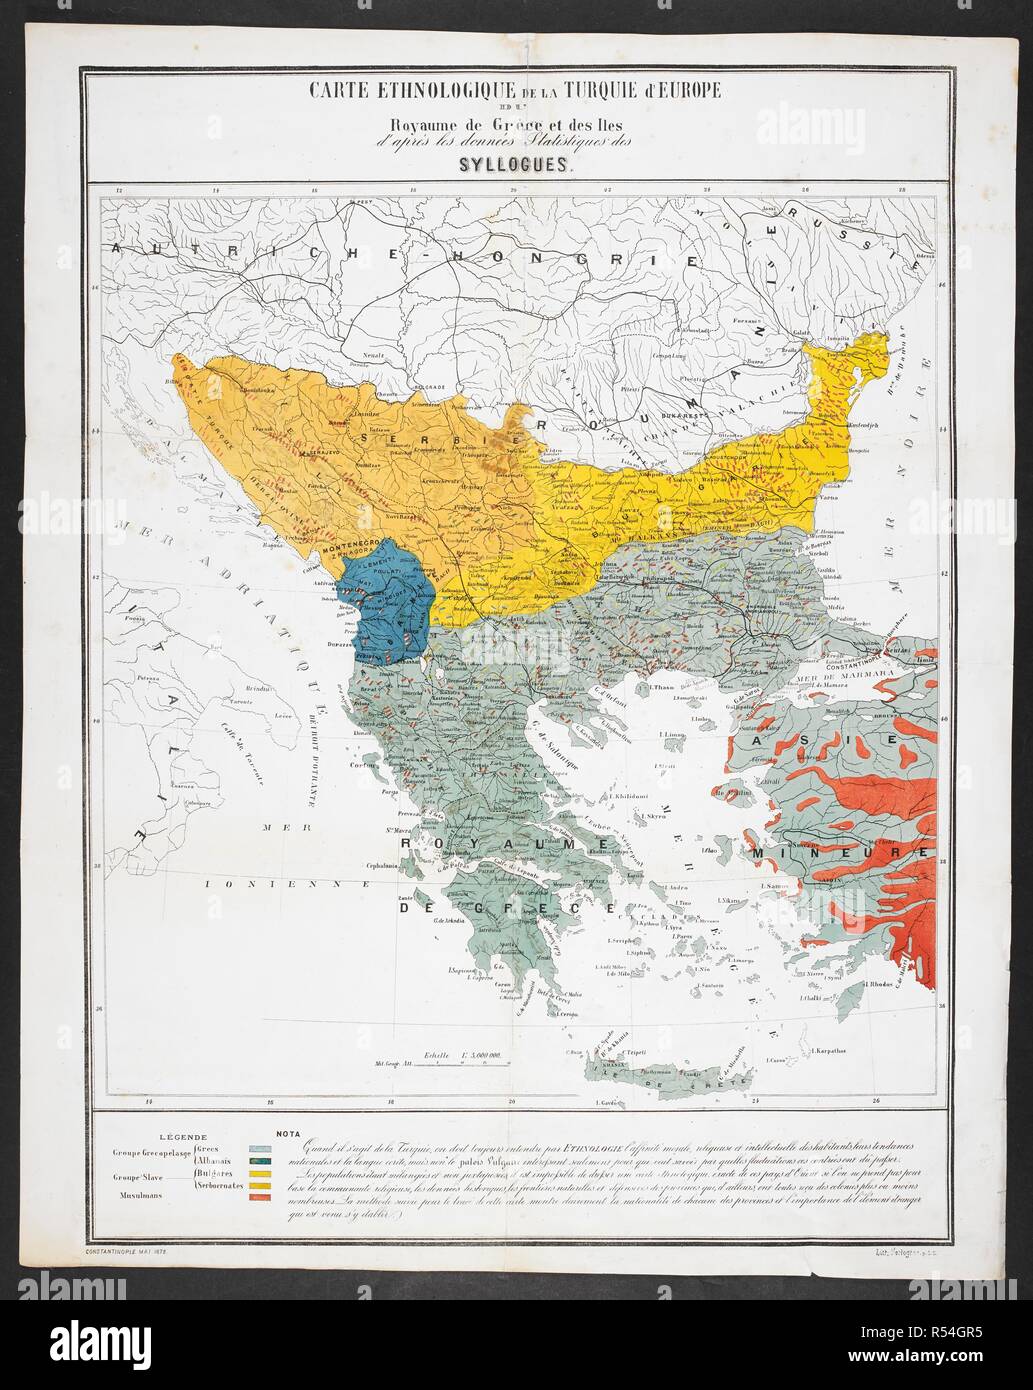 Une Carte Ethnographique De La Turquie En Europe Le Royaume